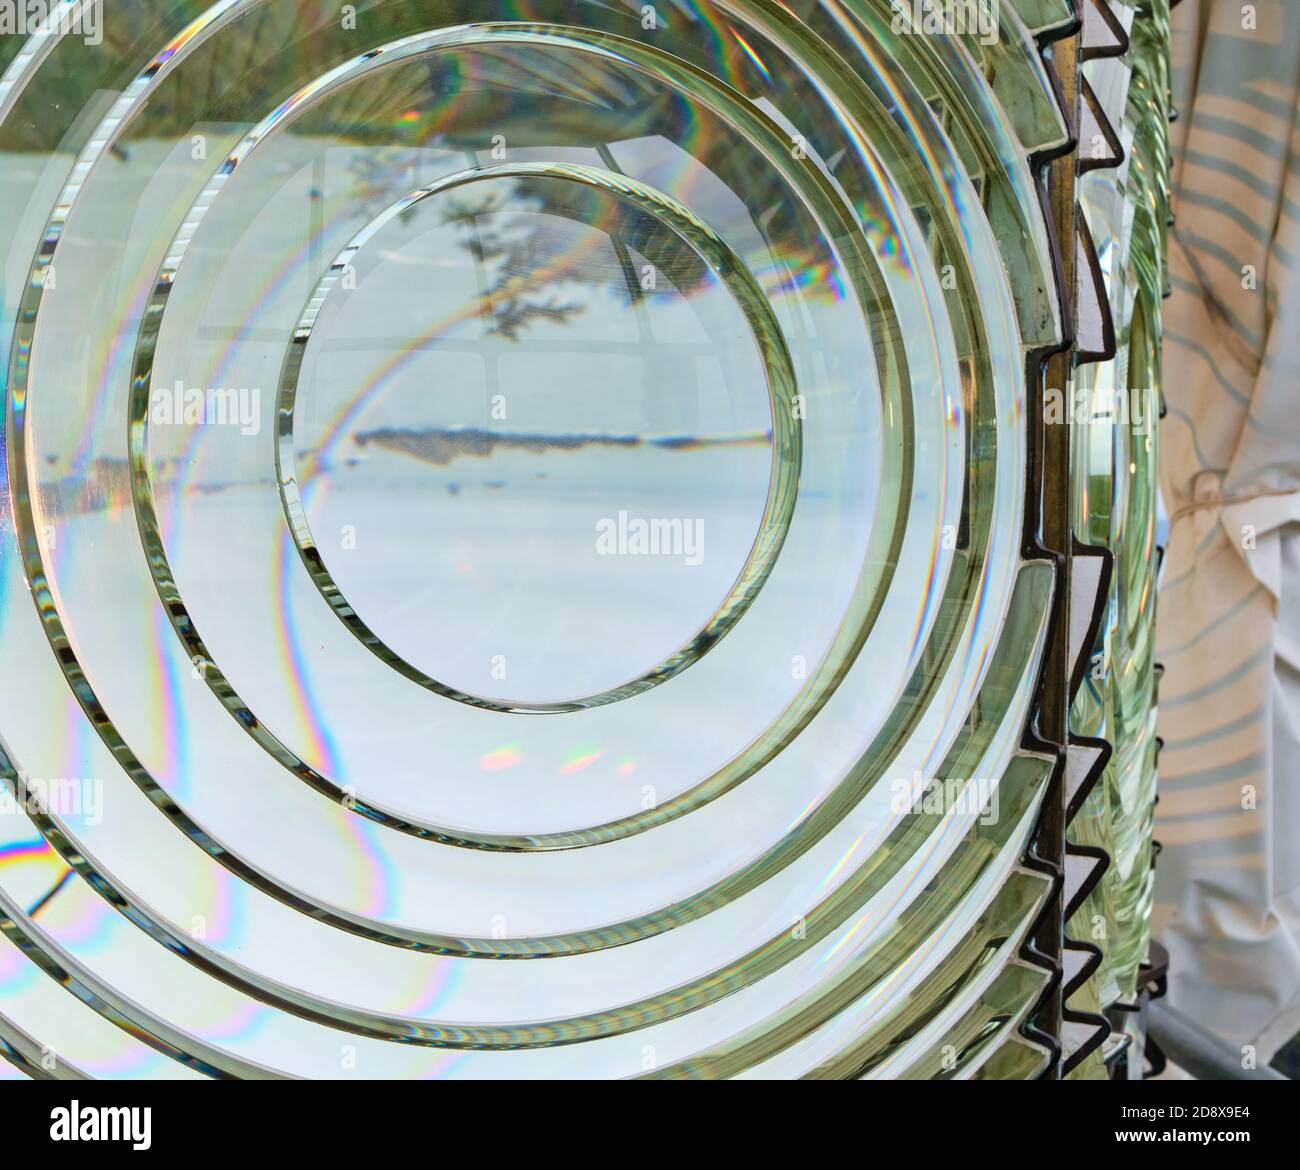 Gros plan de la lentille Fresnel du phare de Cape Blanco montrant l'image inversée de la côte brumeuse... des îles et des arbres... et des éclaboussures colorées dues à la réfraction Banque D'Images